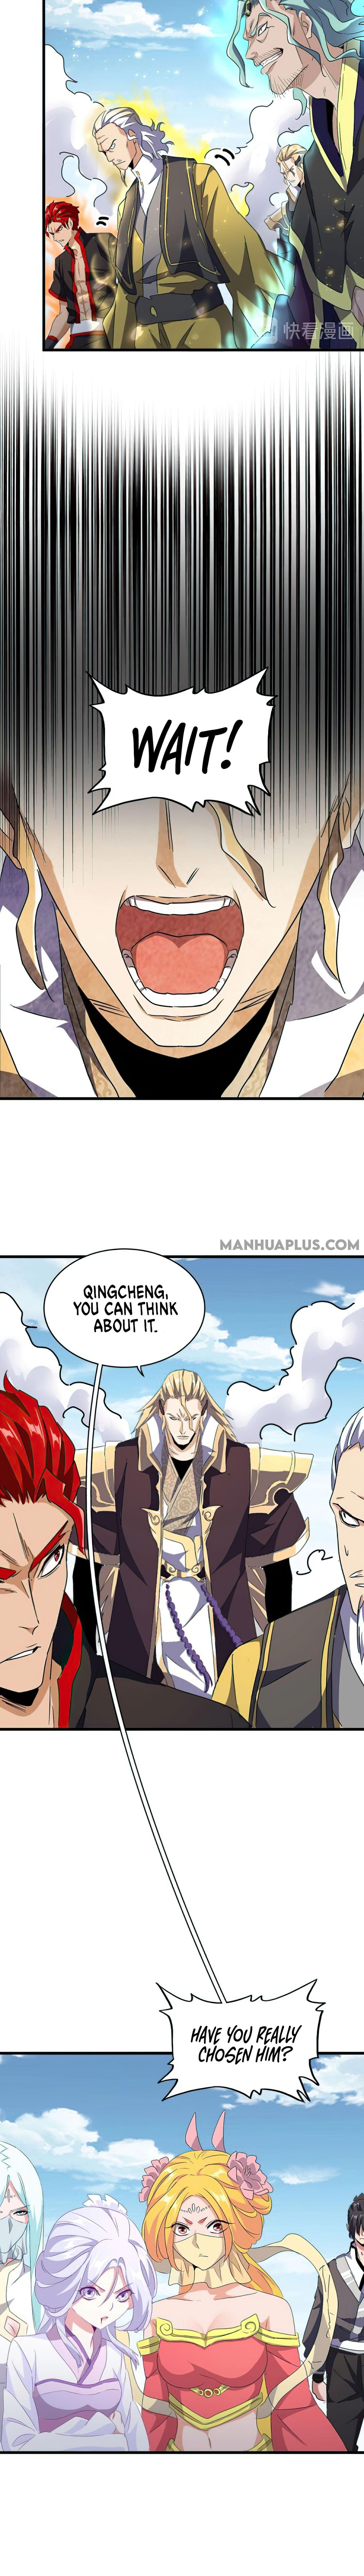 Magic Emperor Chapter 155 page 8 - Mangakakalot